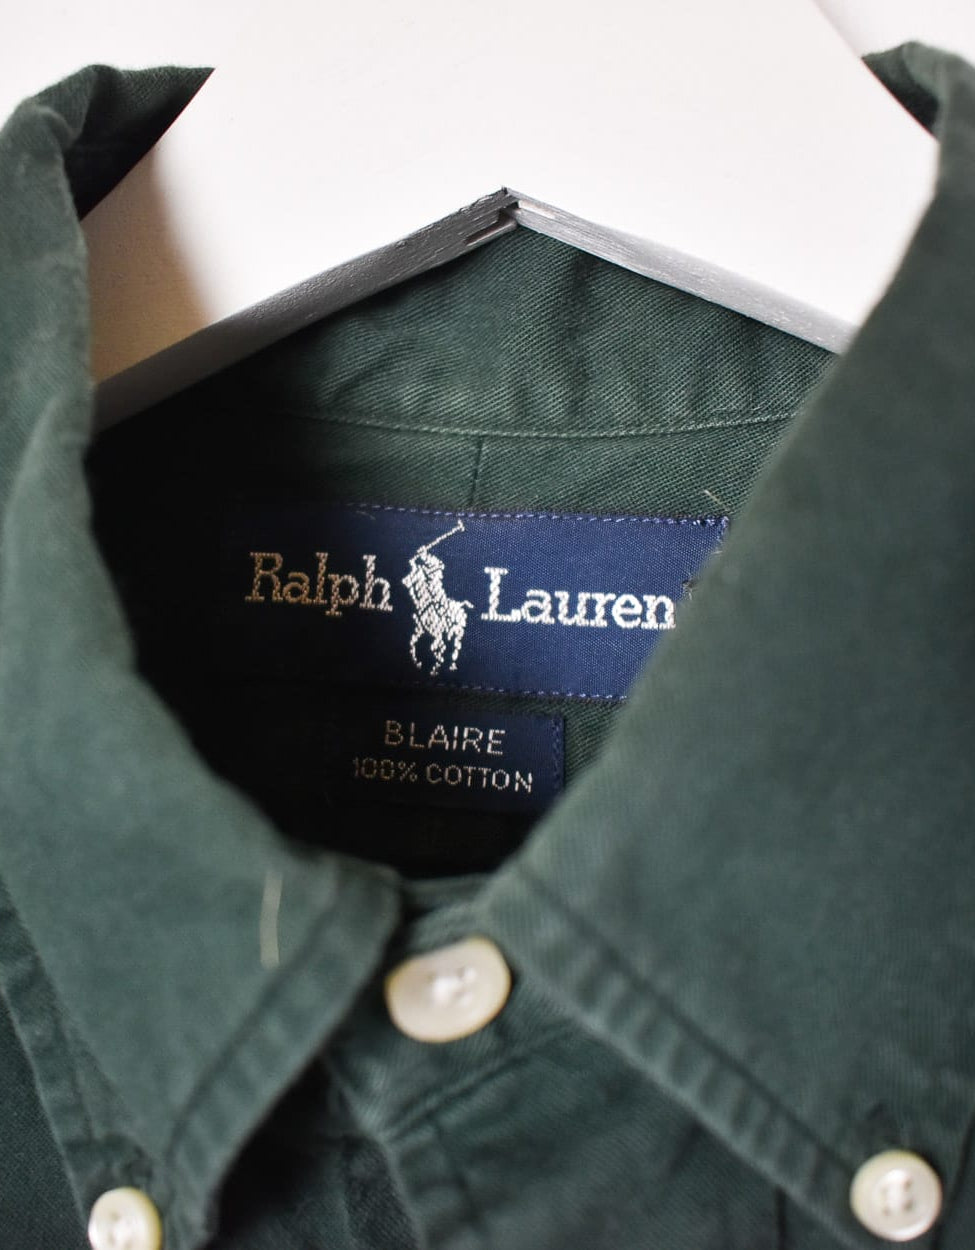 Green Polo Ralph Lauren Shirt - Medium